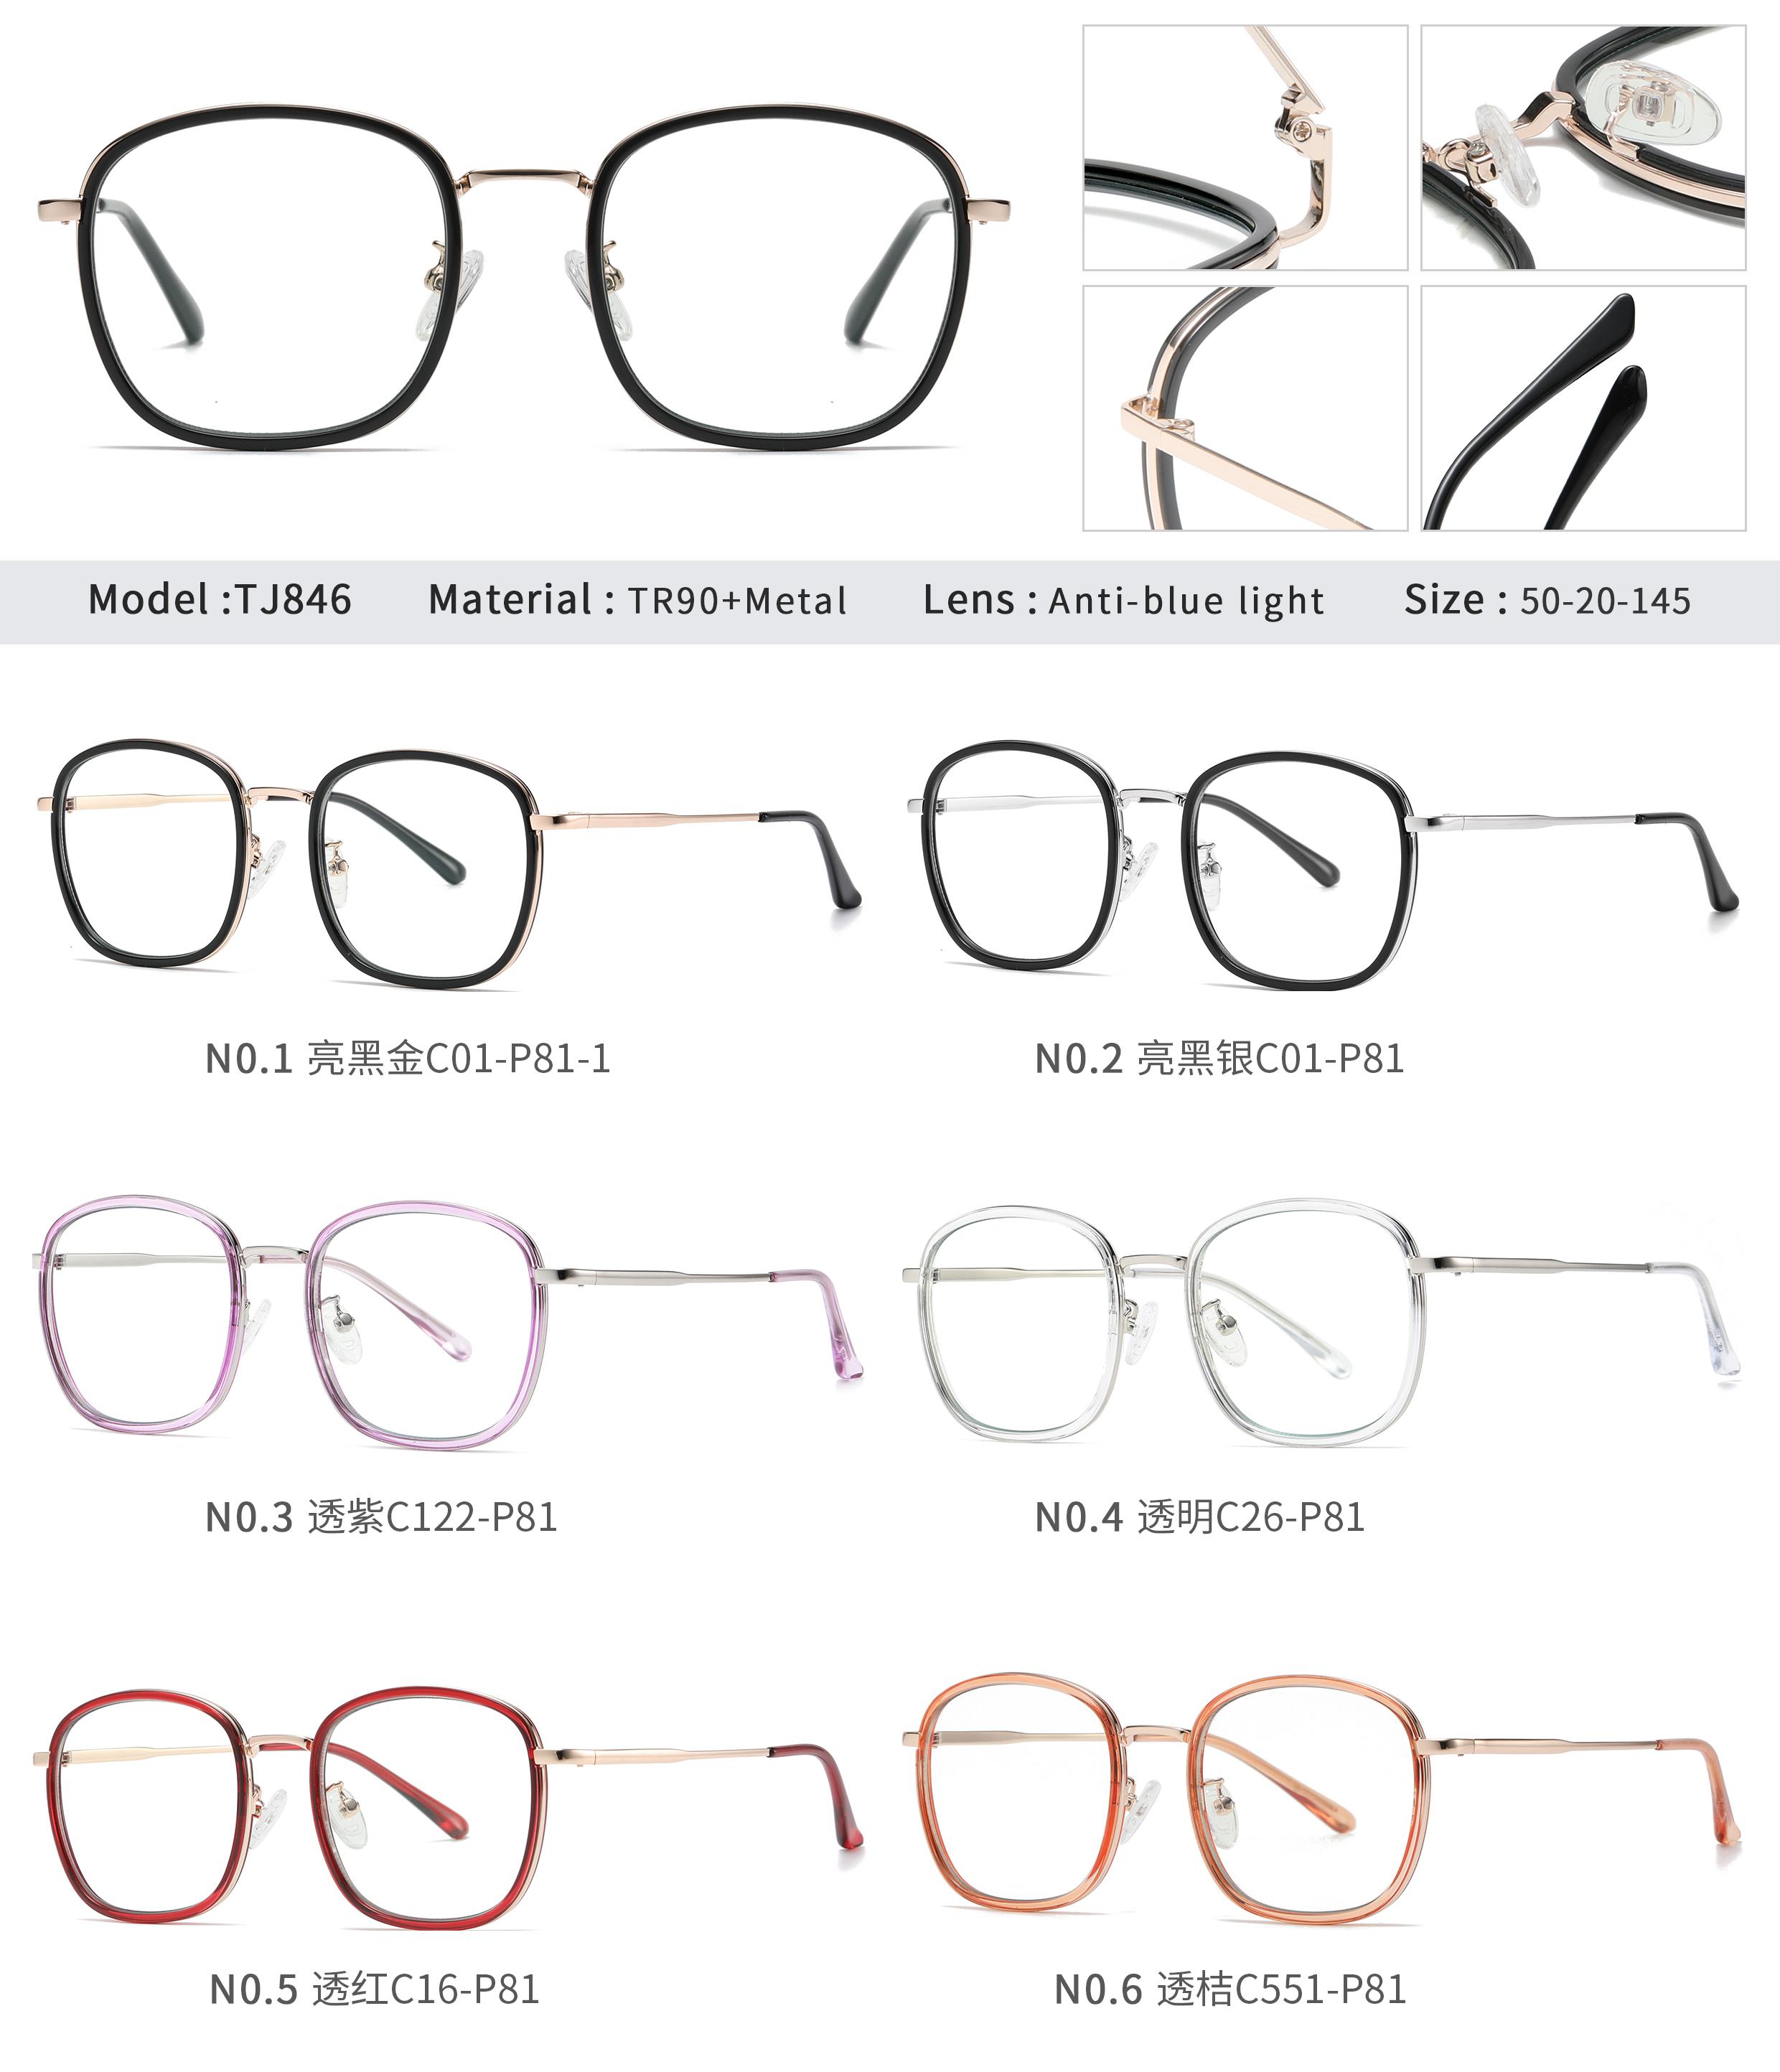 Kreisbrille aus Metall und TR